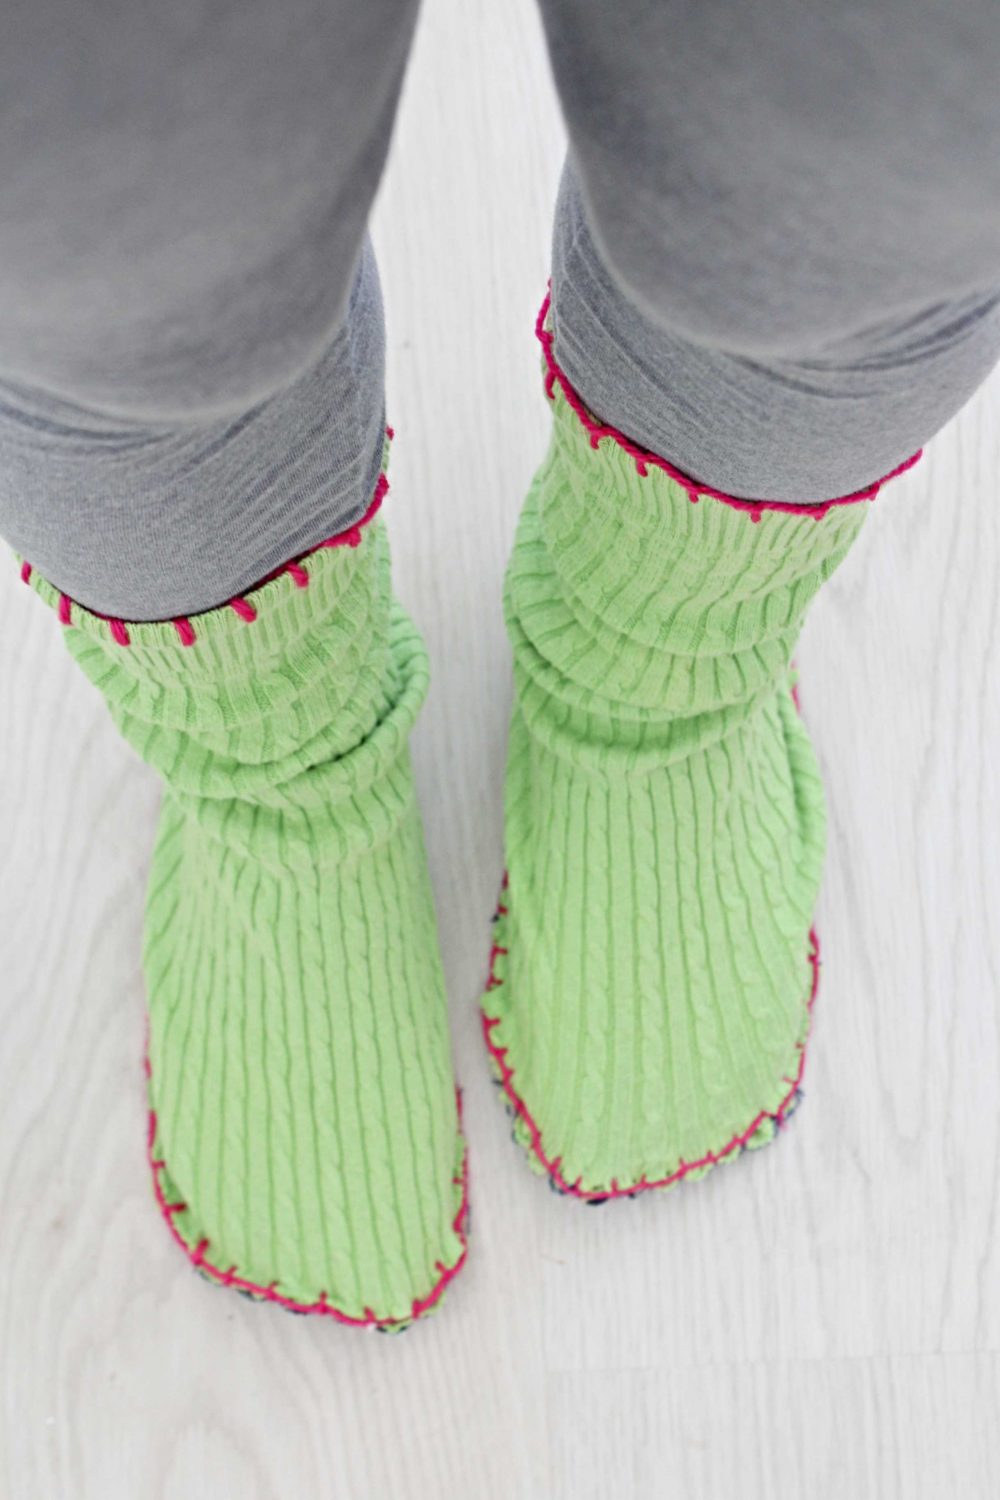 homemade slippers